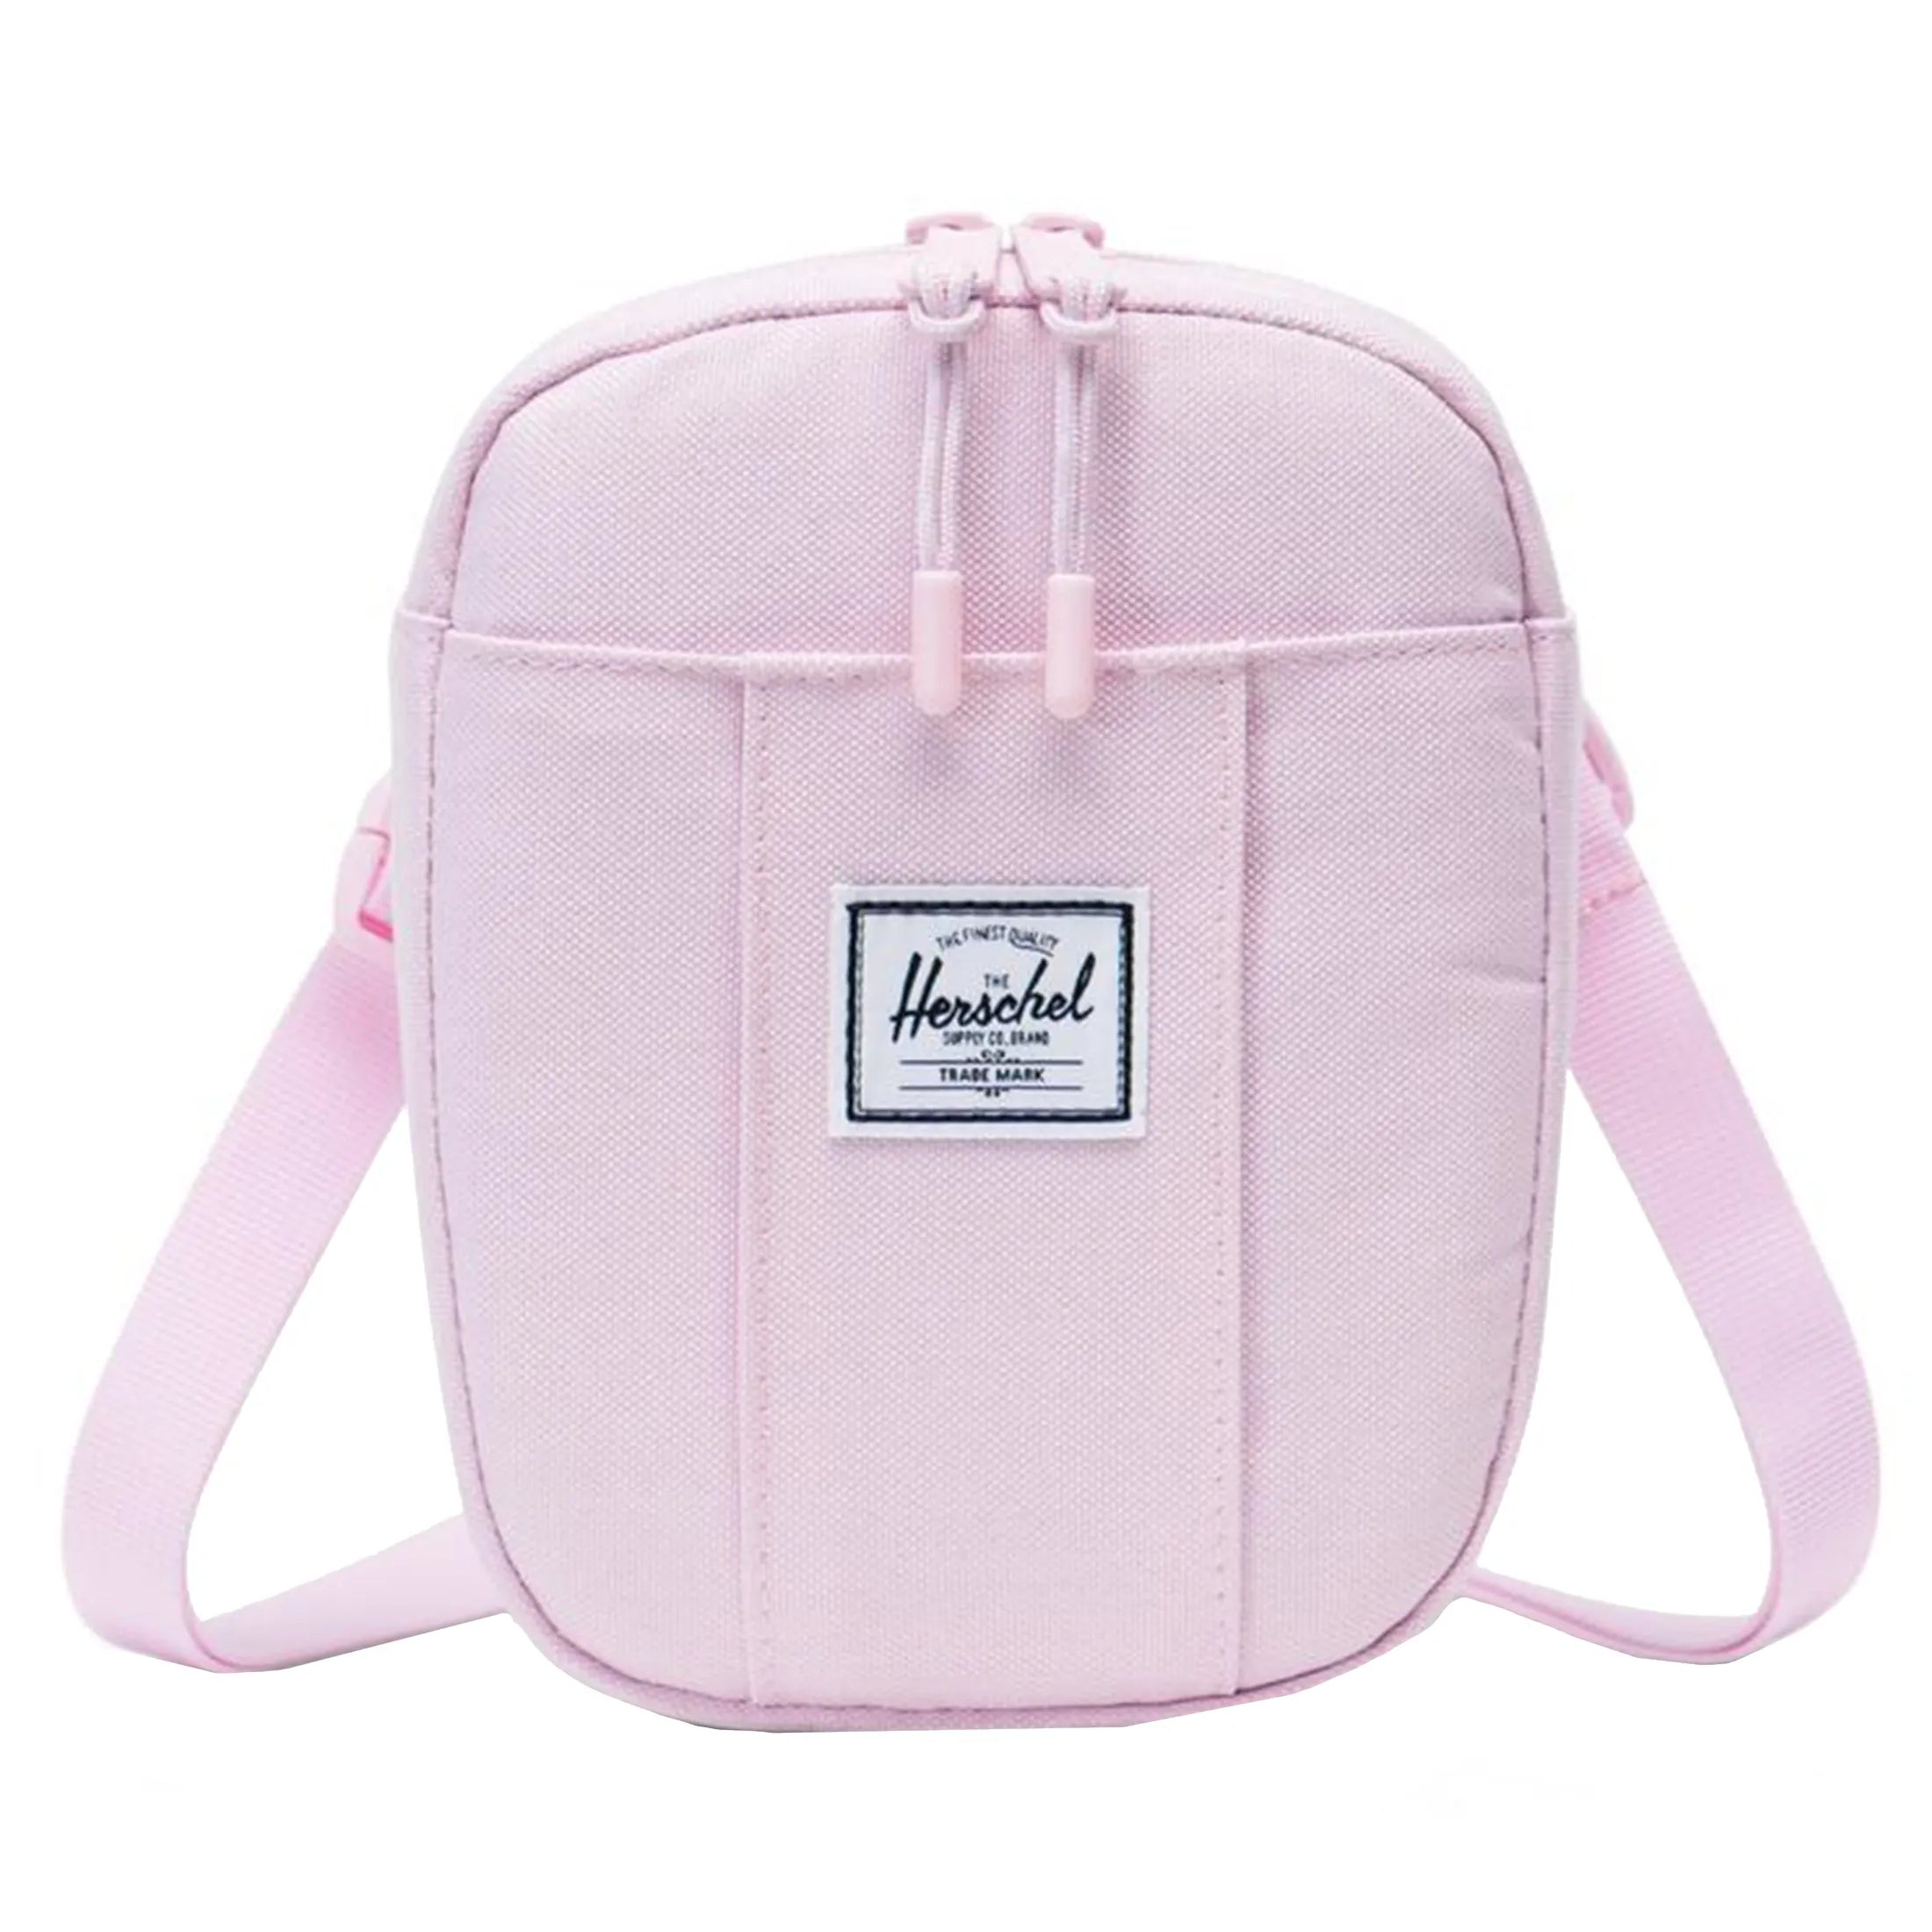 Herschel Bags Collection Cruz Crossbody Shoulder Bag 18 cm - pink lady crosshatch